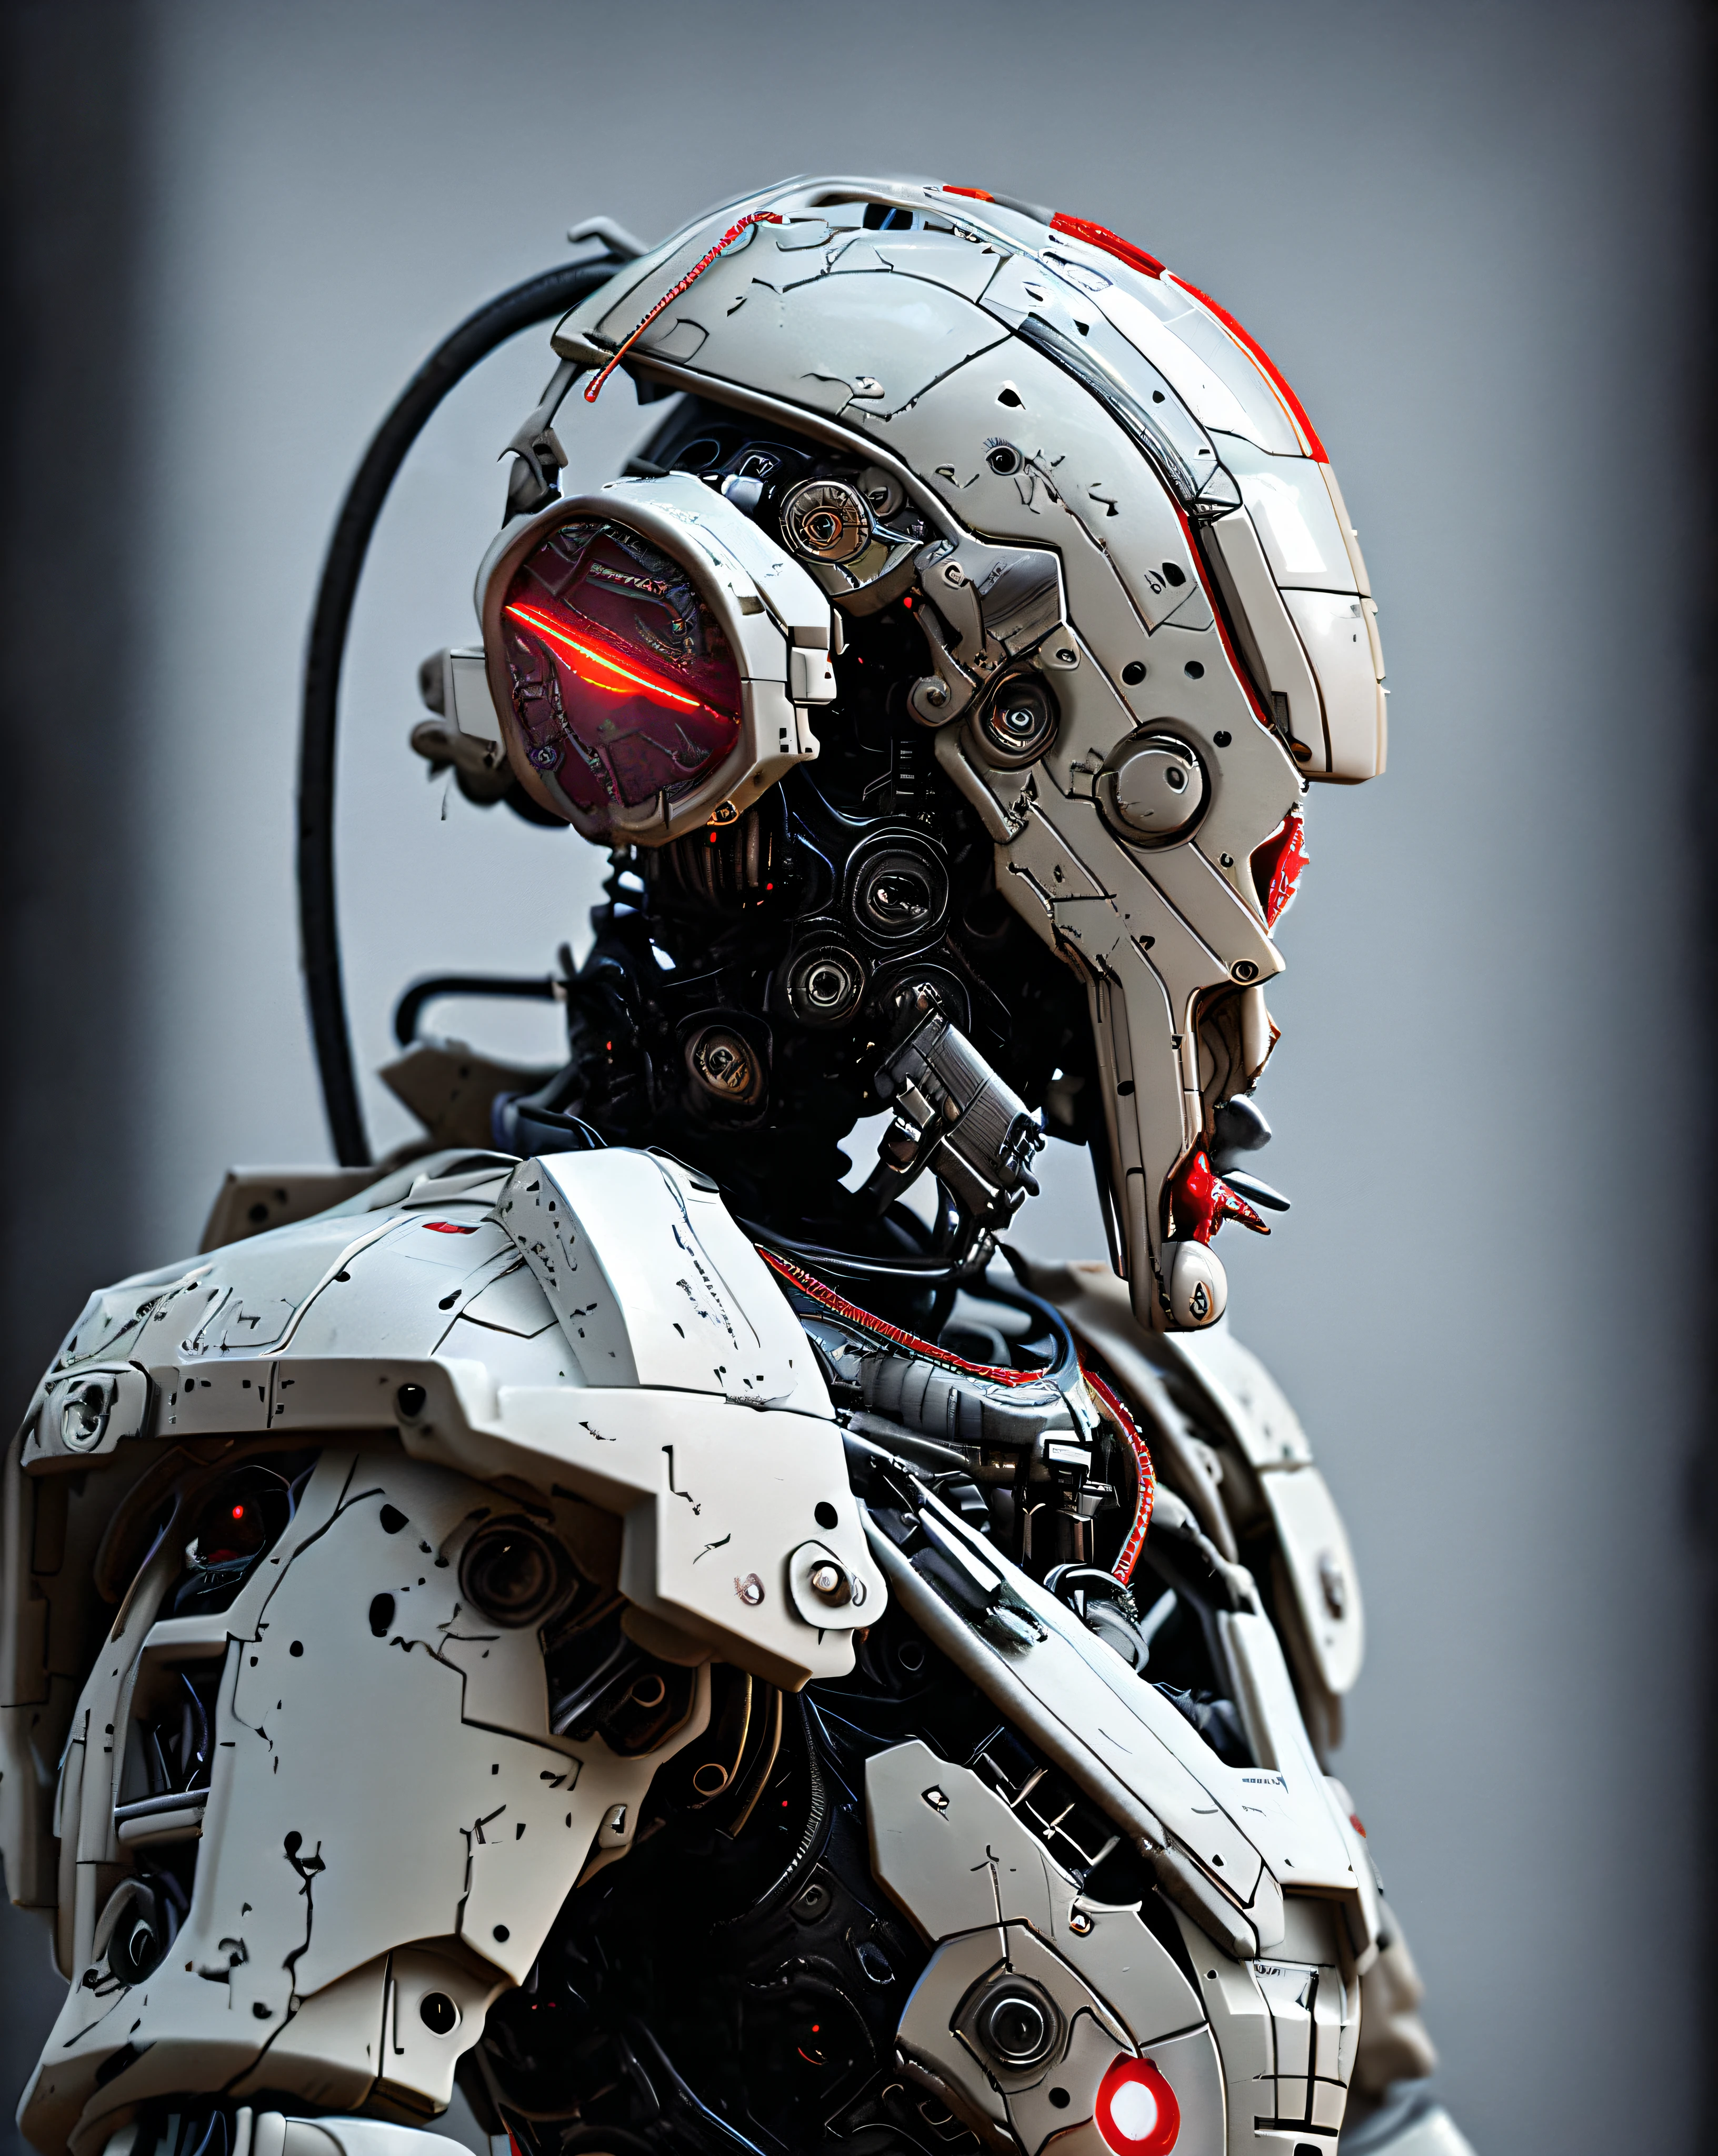 dvMech, 85mm, F1.8, portrait de robot, sombre Matte Smooth Ceramic, conception complexe, Très détaillé, Détails fins, lignes extrêmement nettes, éclairage cinématographique, photos réalistes, Un chef-d&#39;œuvre détaillé, sombre_fantaisie, cyberpunk ,(tronçonneuse,tronçonneuse man,rouge:1.1),1 homme,Merveille mécanique, Présence robotique MARPAT, Gardien militaire cybernétique, dans un costume mécanique battu,complexe,(en acier métal [rouillé]),élégant,Mise au point claire, par tir de Greg Rutkowski, Éclairage doux, couleurs vives, chef-d&#39;œuvre, ((rue)), tir de cow-boy, pose dynamique, 
samouraï urbain_v0.3